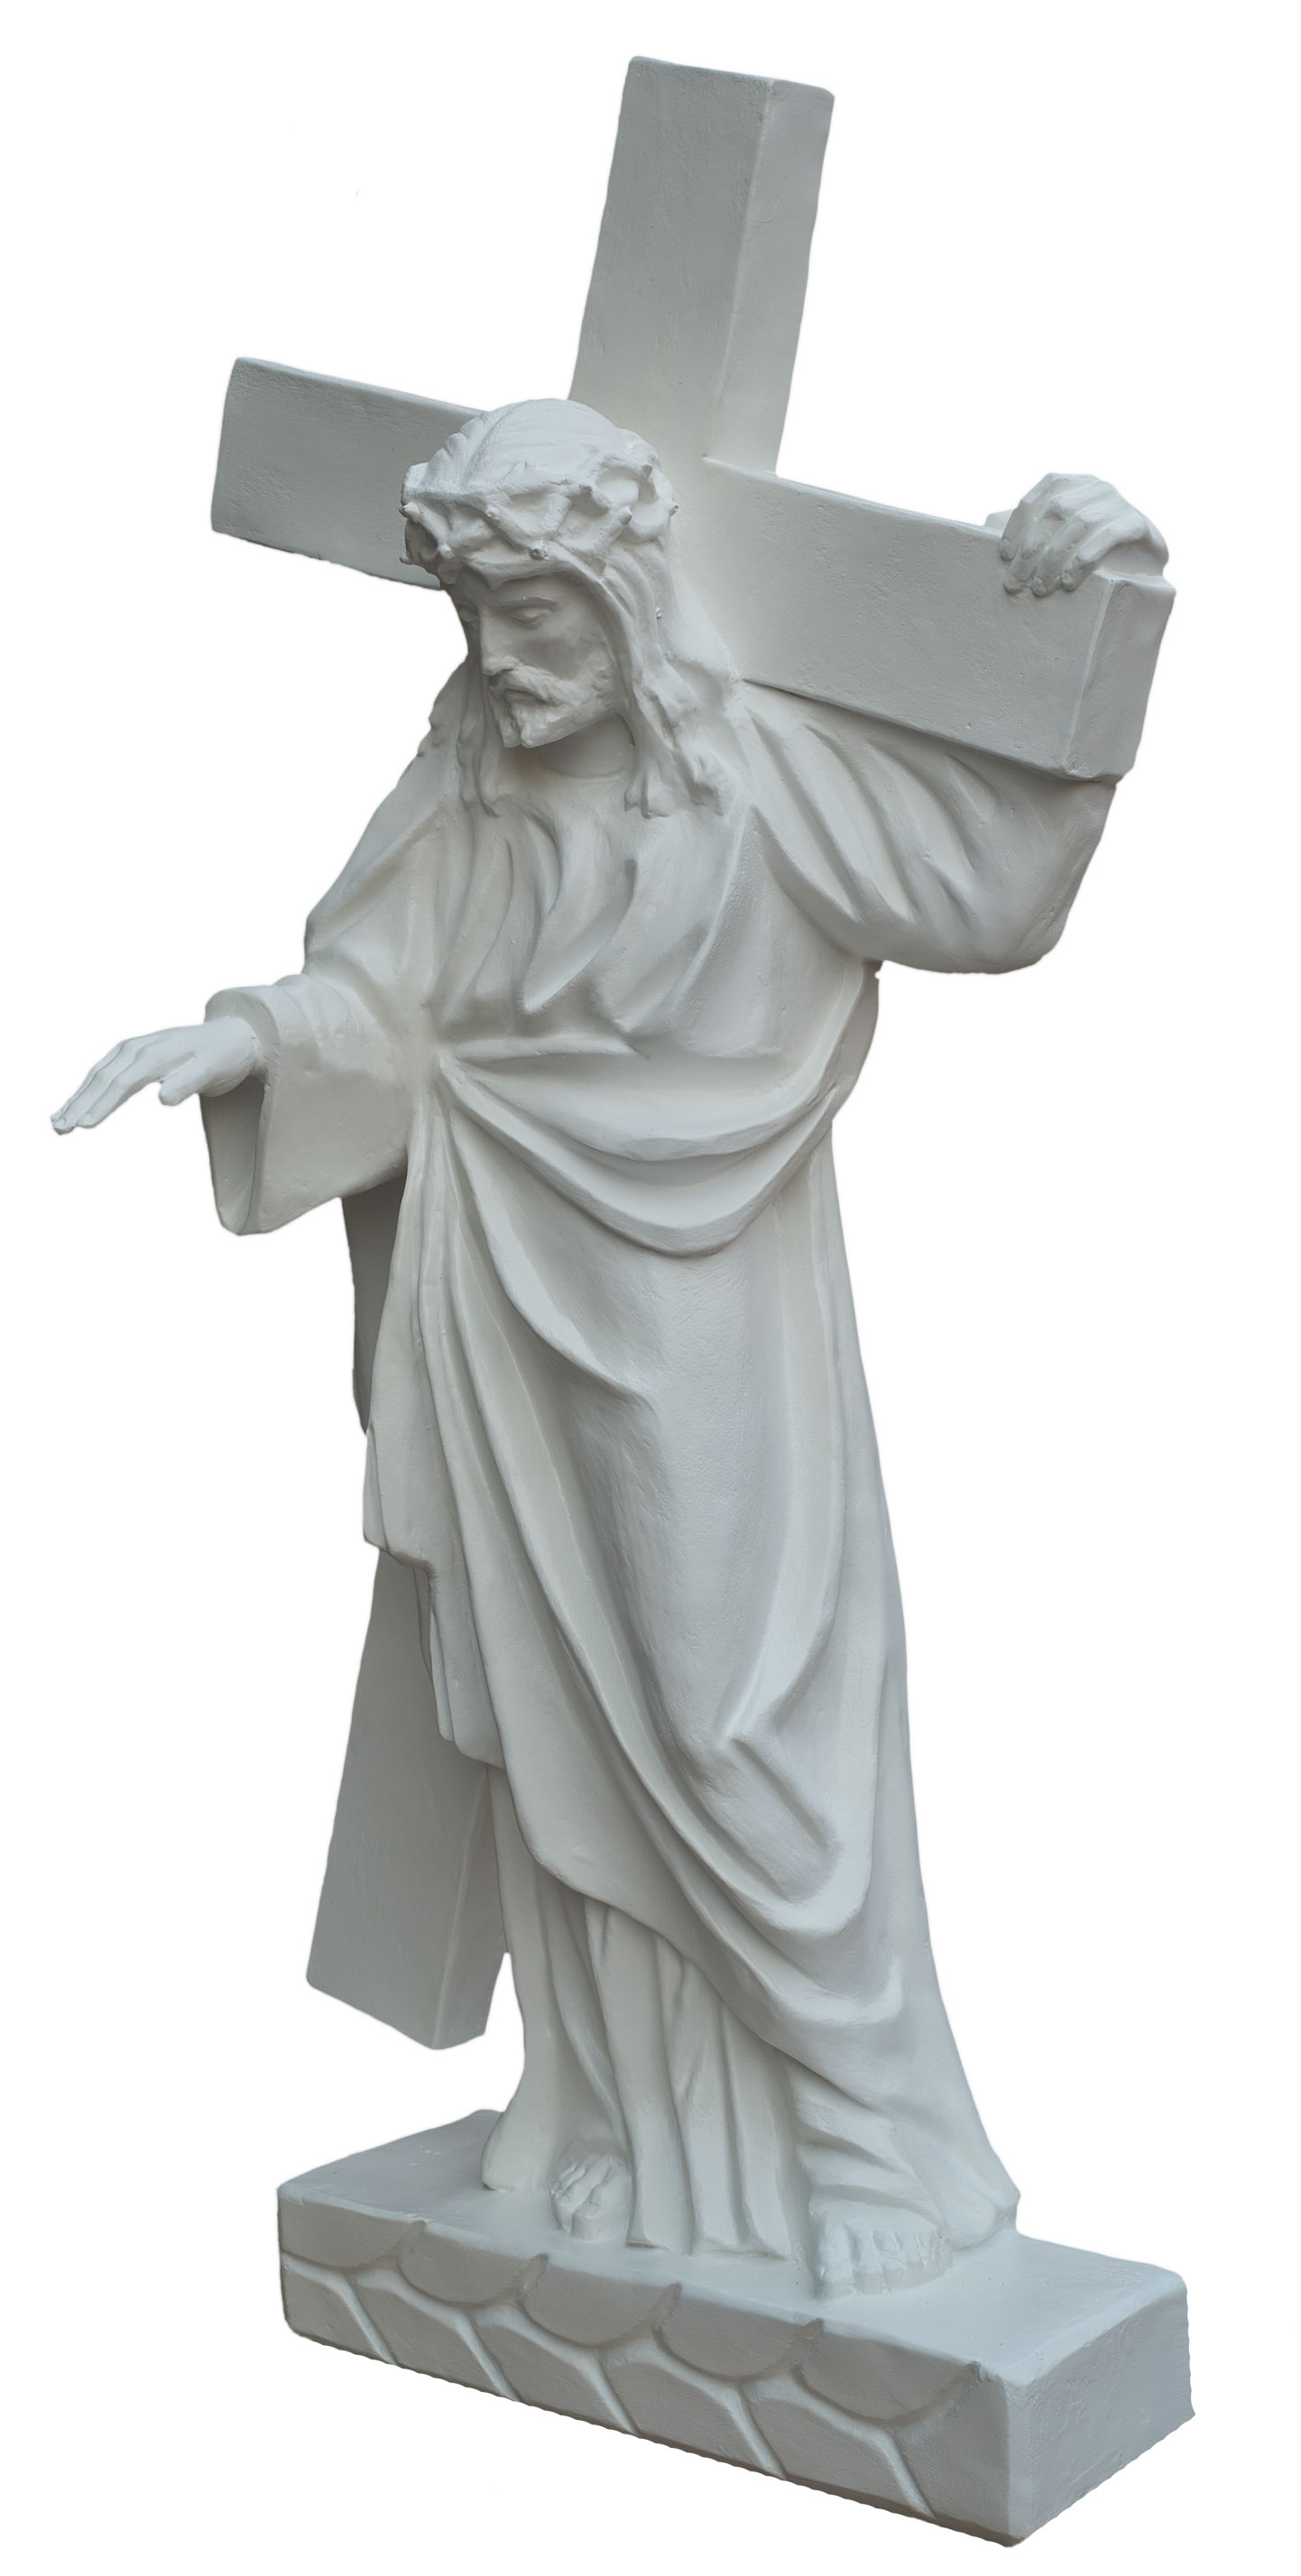 Jezus z krzyżem - Figura nagrobkowa - 117 cm - R 155